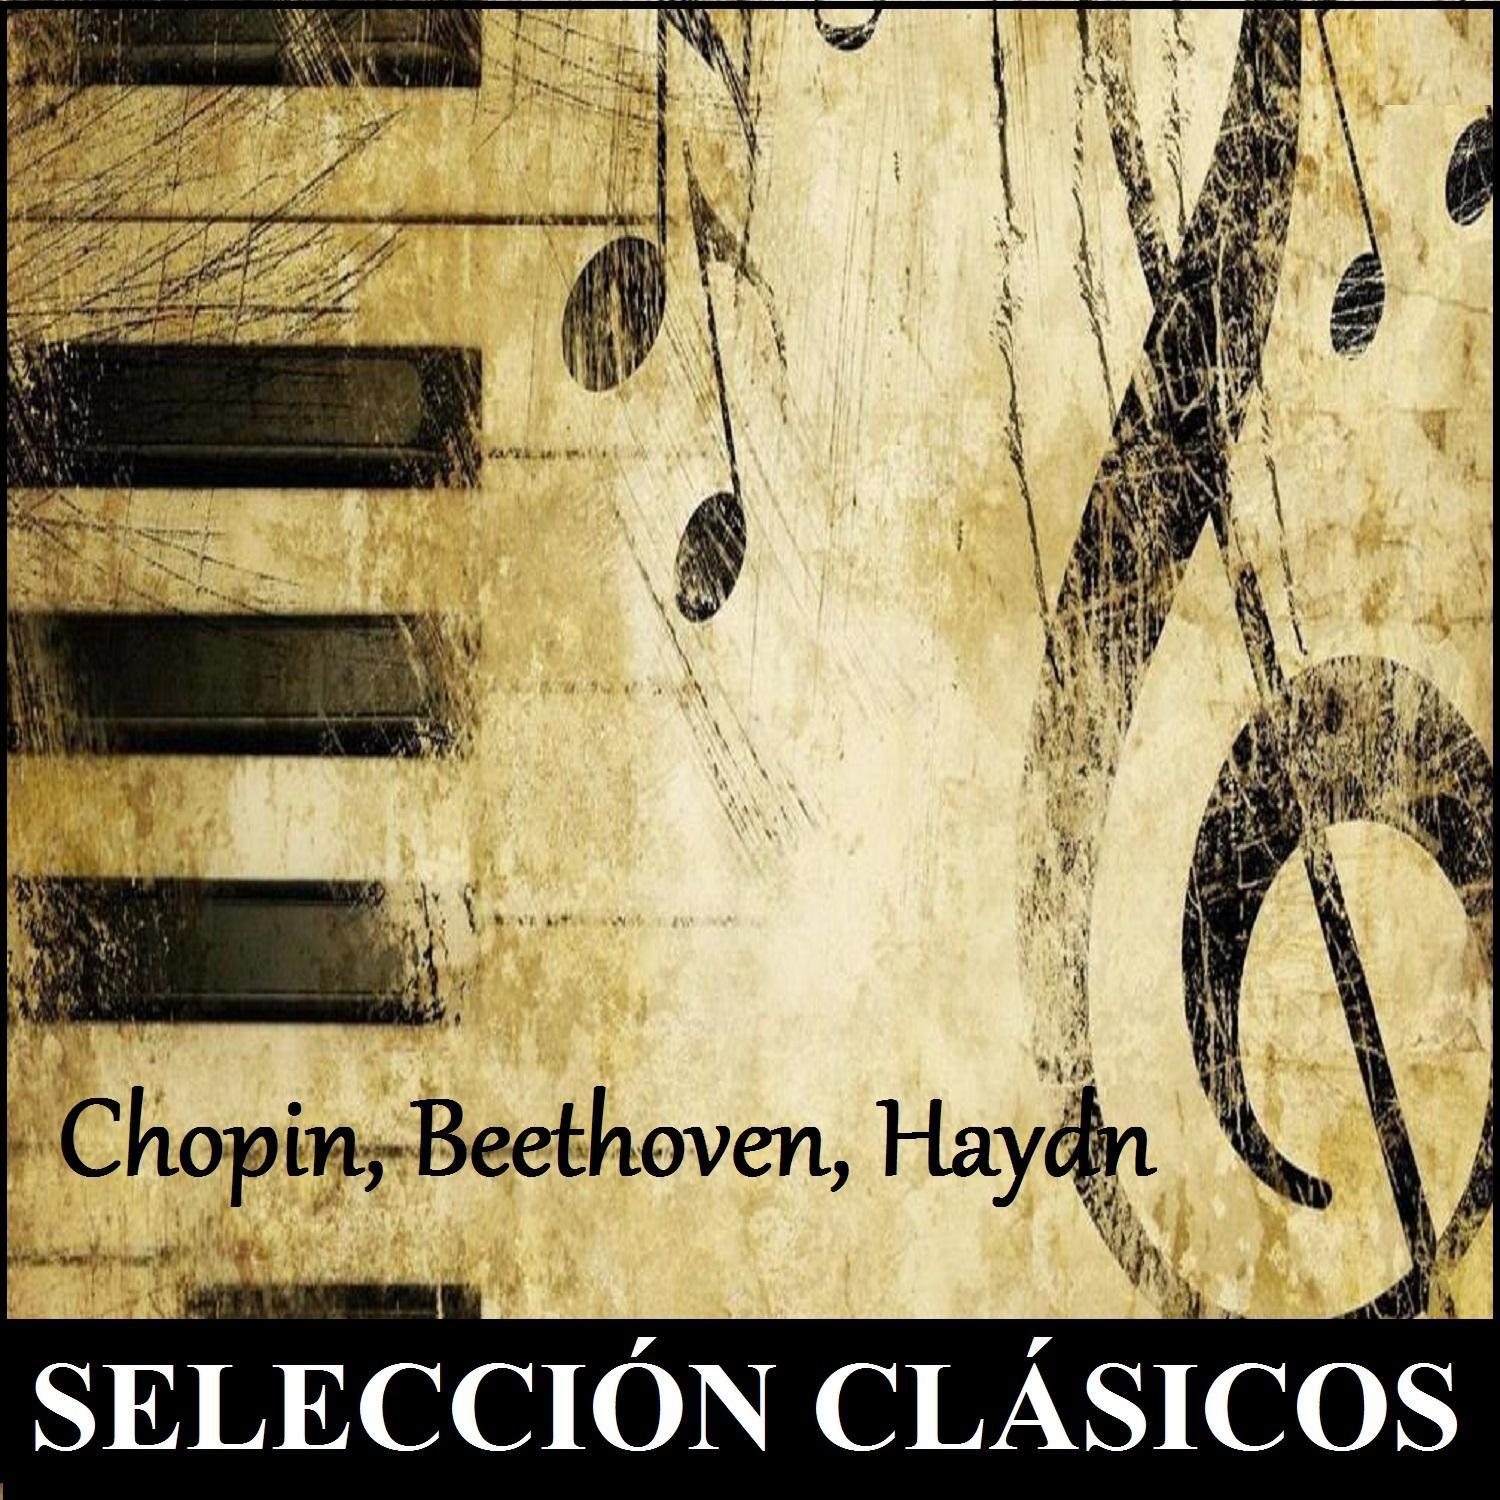 Selección Clásicos - Chopin, Beethoven, Haydn专辑